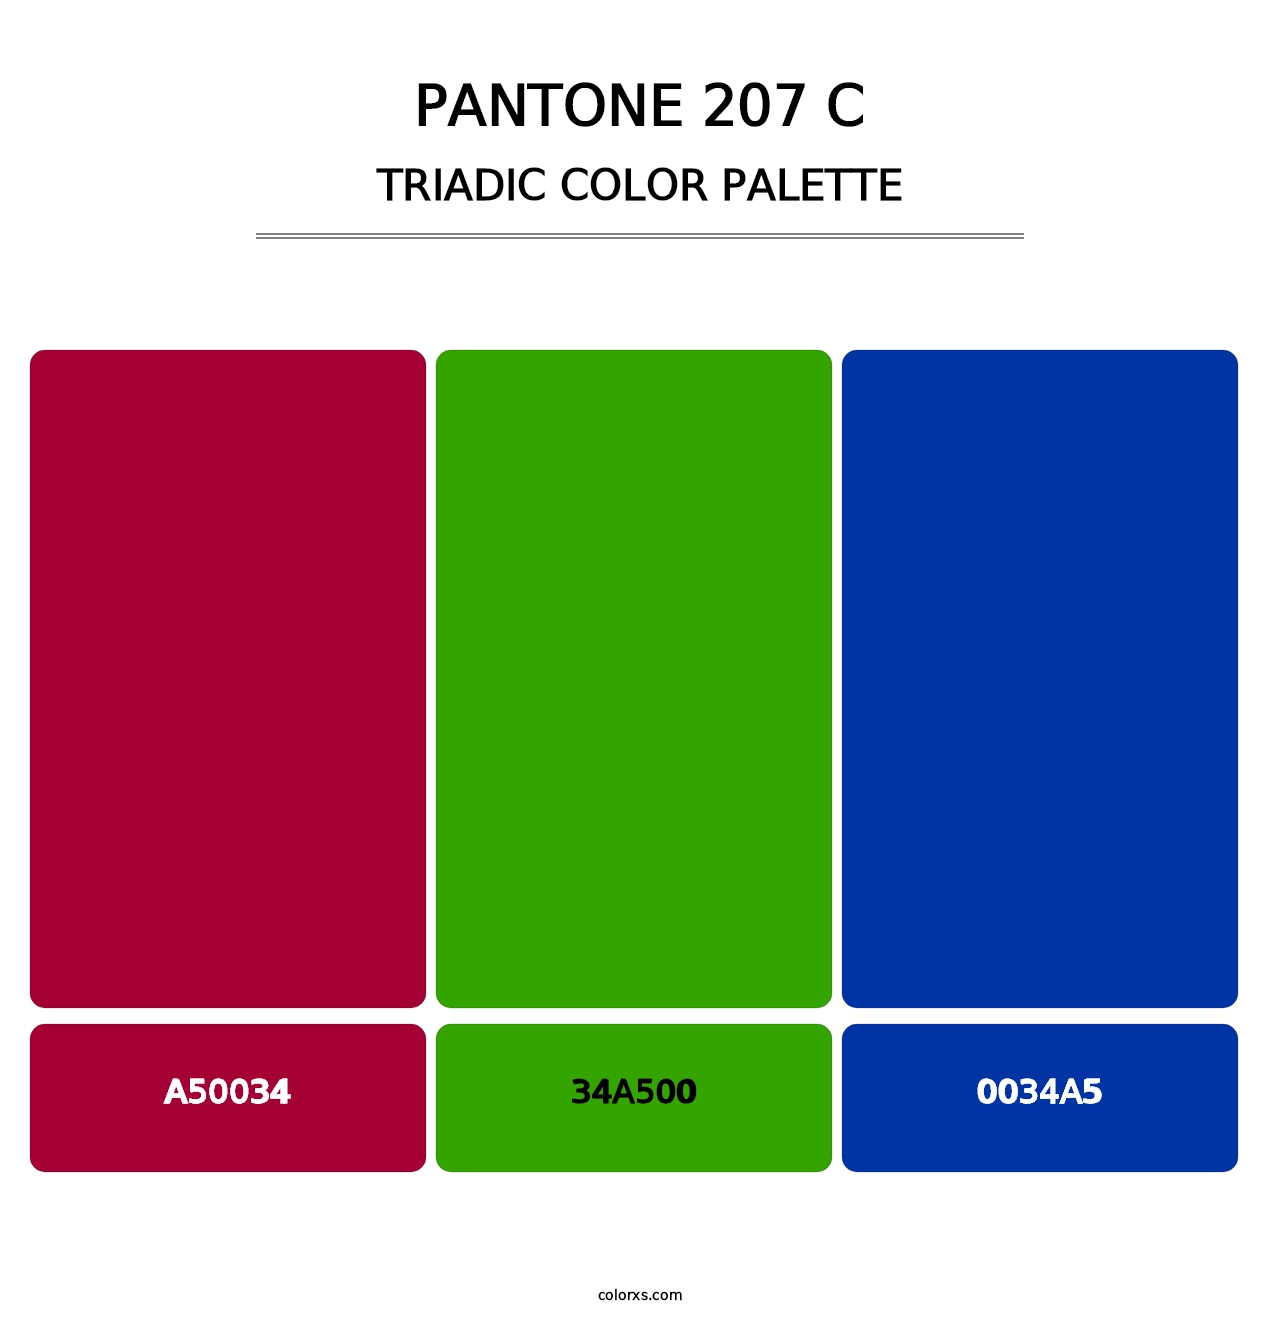 PANTONE 207 C - Triadic Color Palette